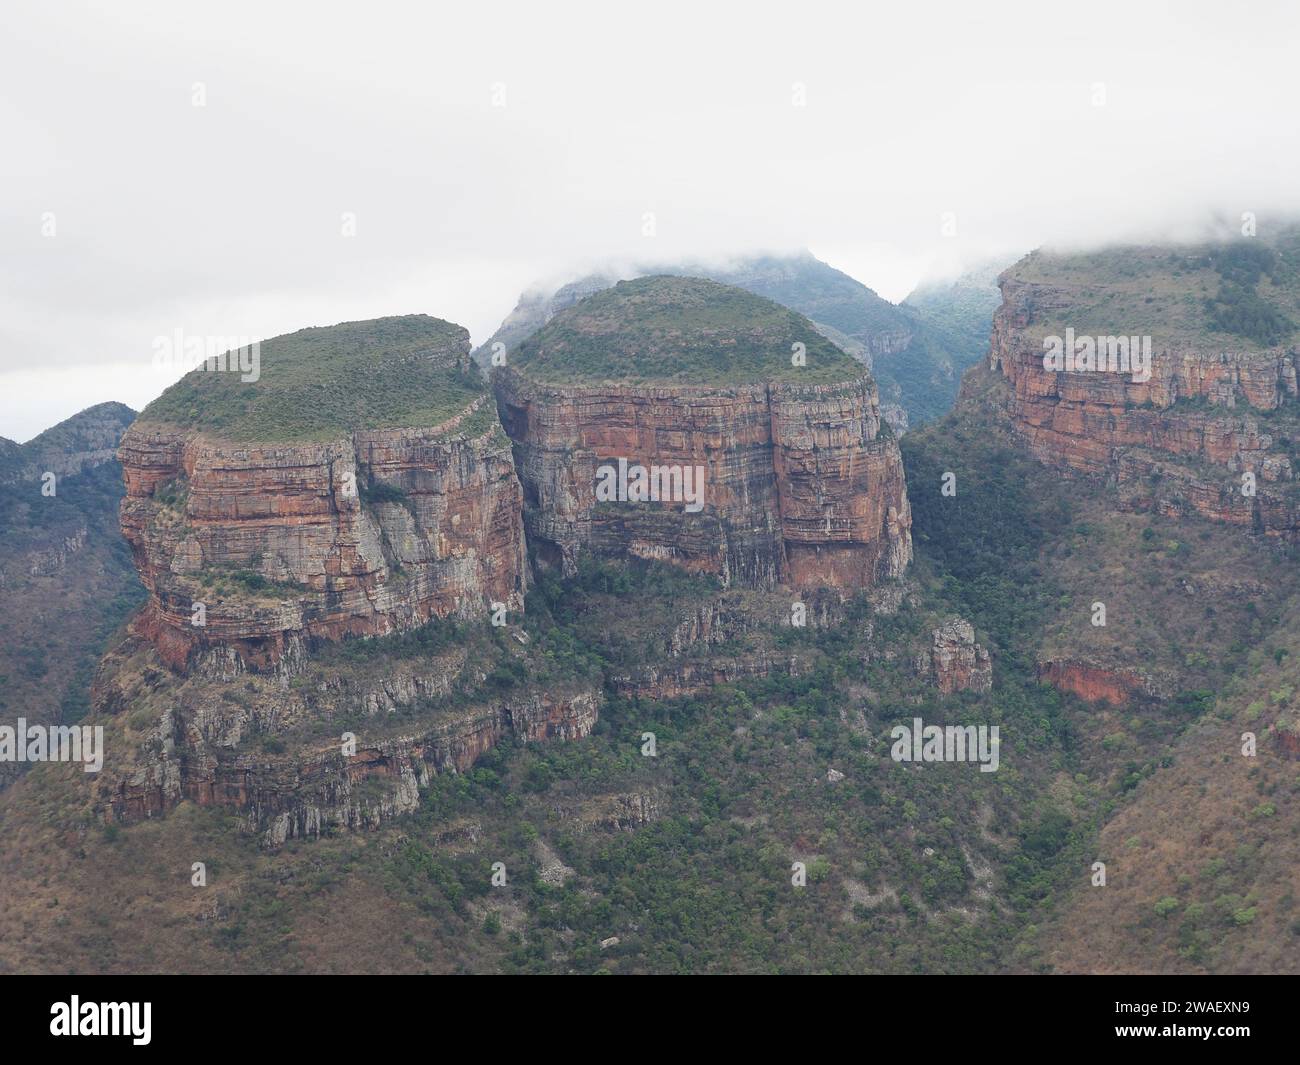 Les trois rondavels dans Blyde River Canyon, avec des nuages suspendus bas, sur la route panoramique dans la province de Mpumalanga, Afrique du Sud. Banque D'Images